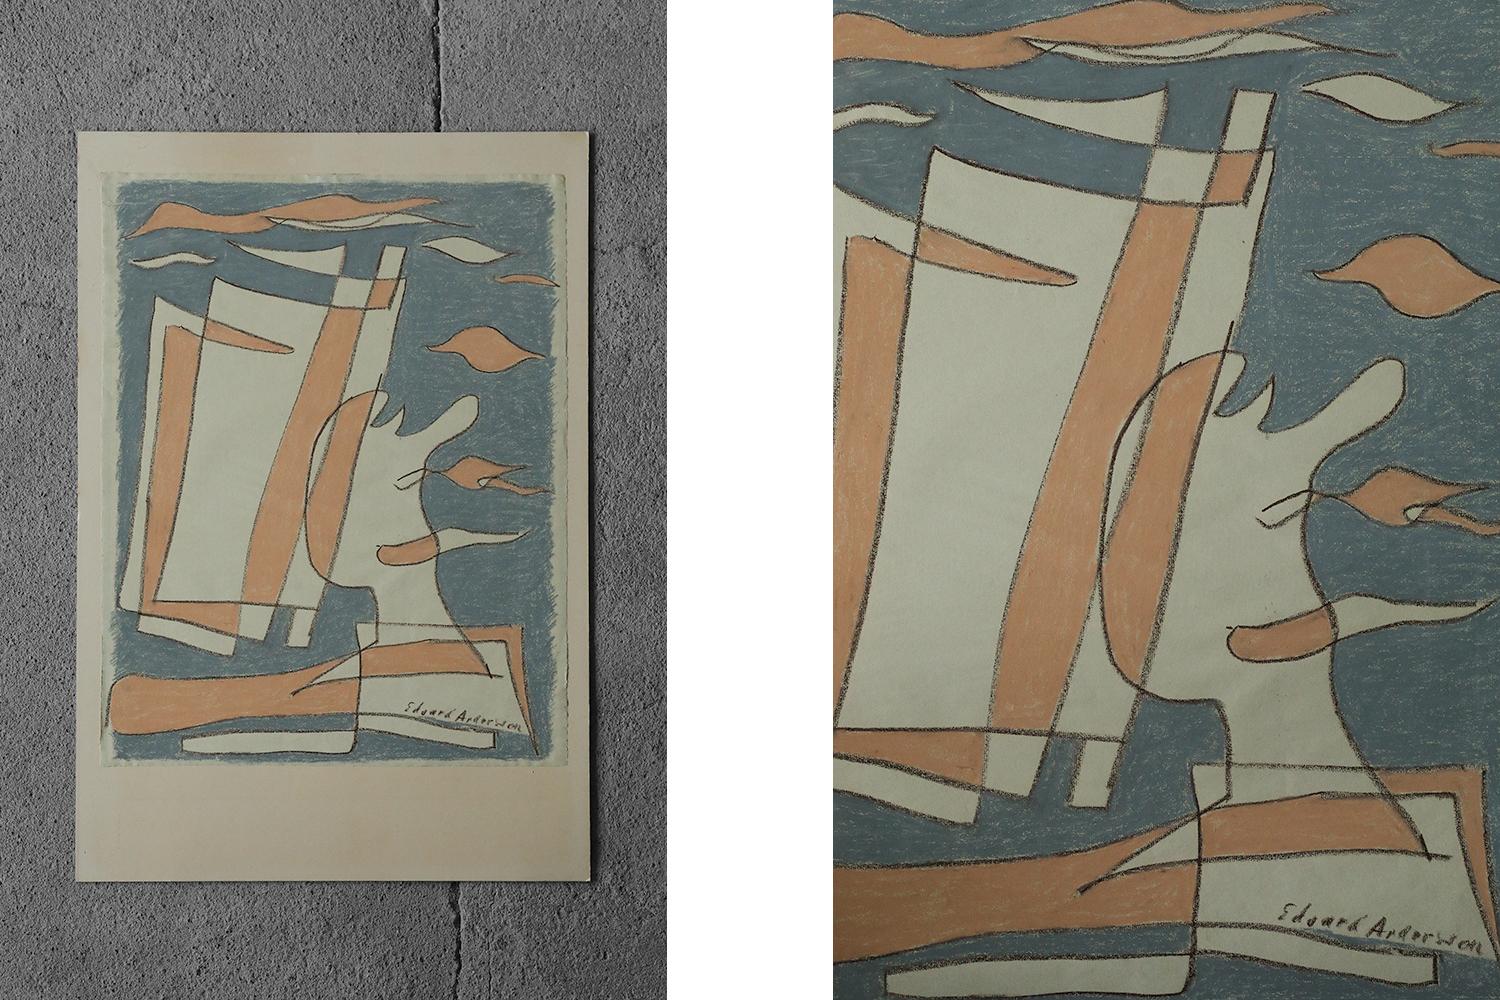 Edvard Andersson, Komposition
Pastellzeichnung
Das Werk ist vom Künstler signiert
Arbeitsmaße 63/49
Ungerahmte Arbeit

Edvard Andersson (1891 - 1967) war ein schwedischer Künstler. Im Jahr 1918, im Alter von 27 Jahren, hatte er seine erste